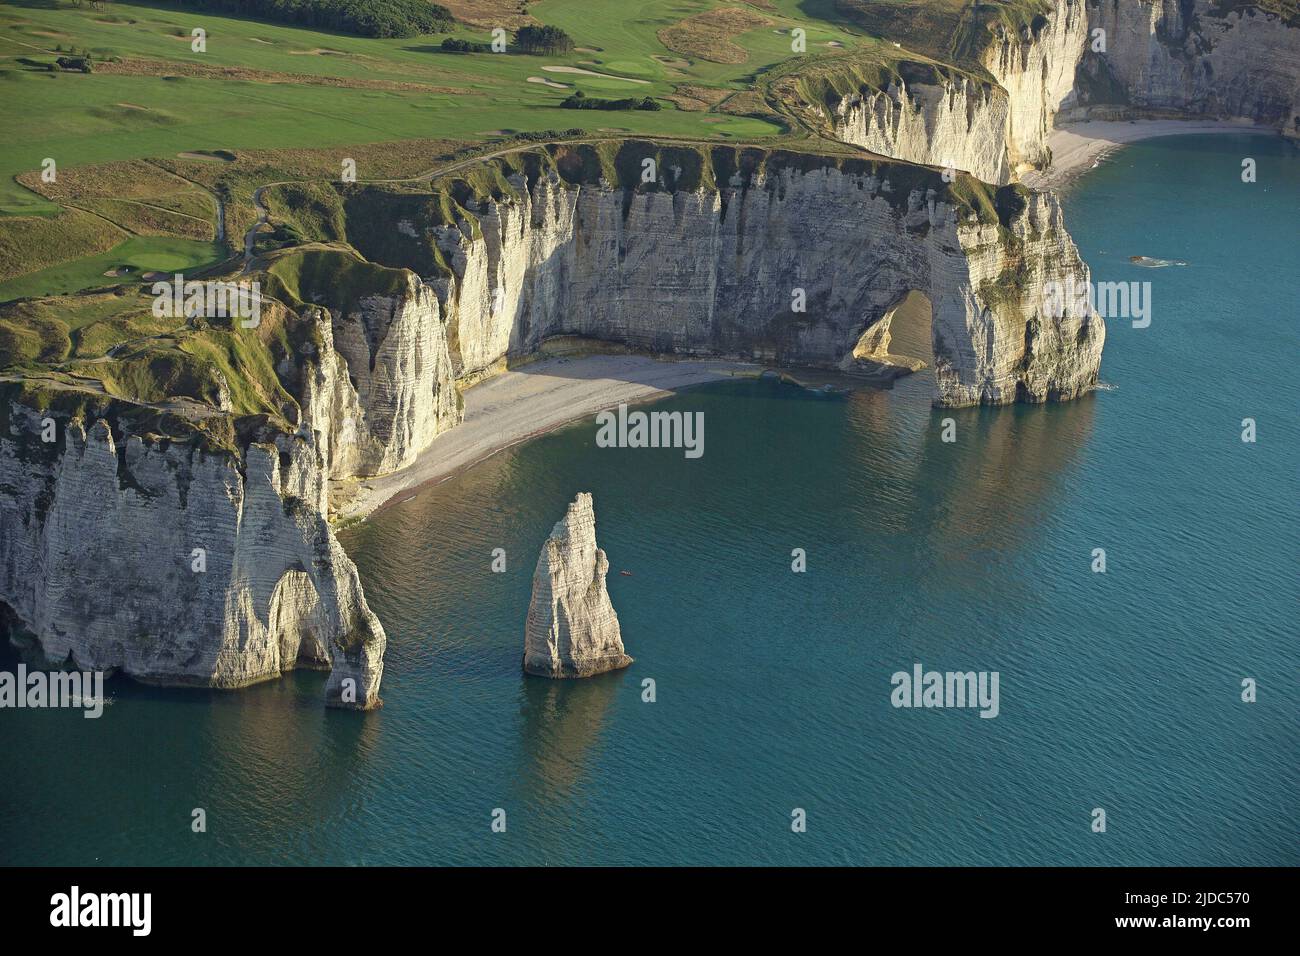 Francia, Senna Marittima, Etretat, scogliere calcaree hanno fatto di essa un luogo di turismo internazionale (vista aerea), Foto Stock